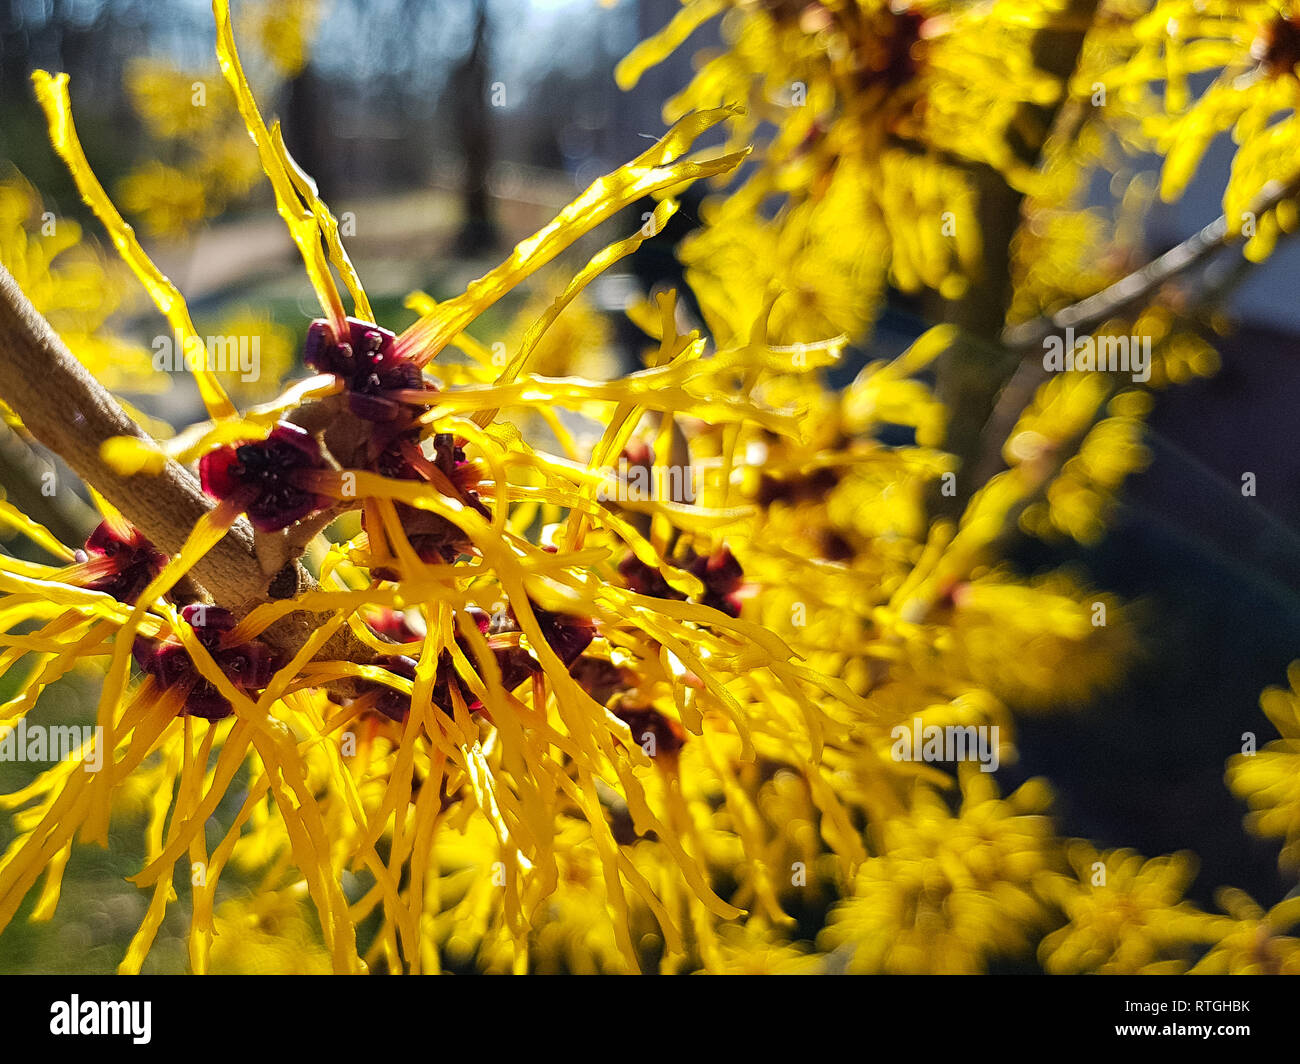 Nahaufnahme von einem merkwürdigen gelben Pflanze, die aussieht wie Würmer in der Sonne Stockfoto